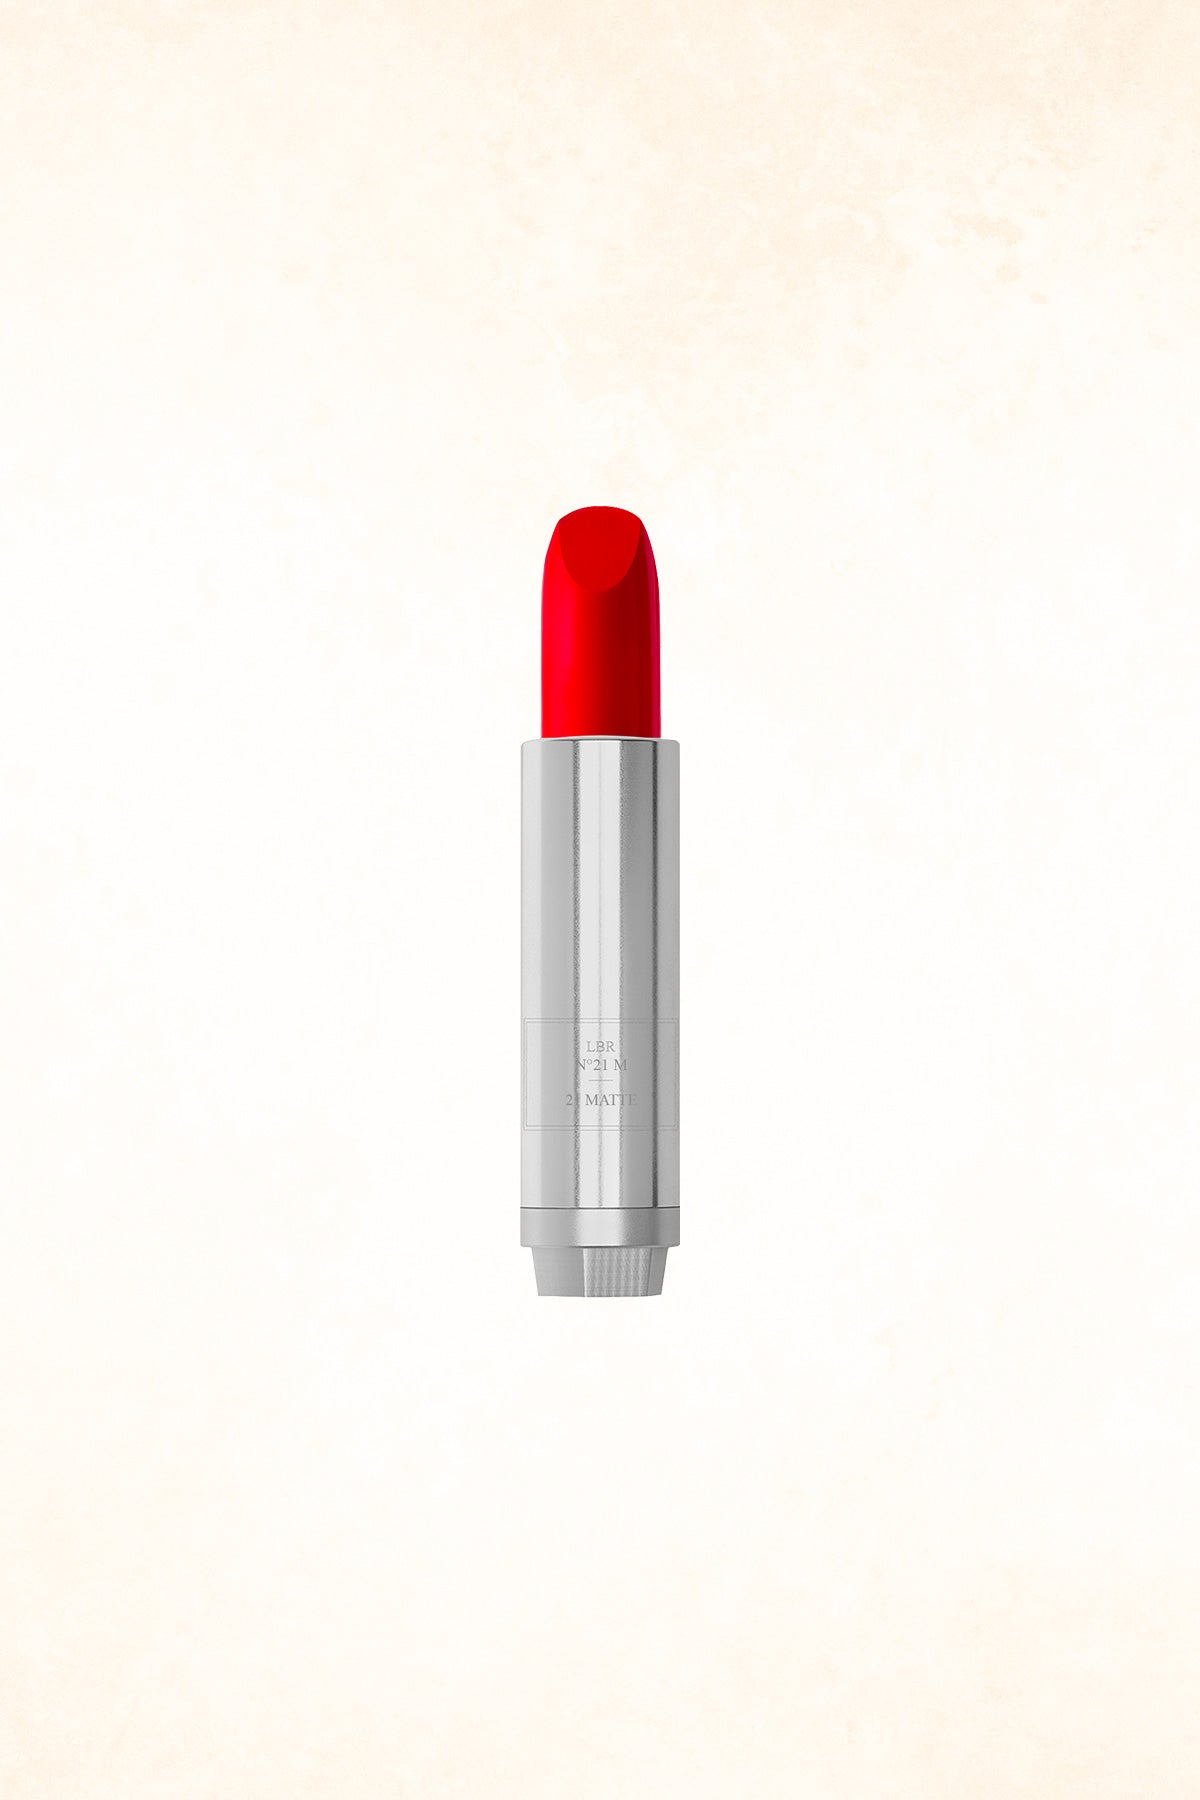 La Bouche Rouge - 21 Matte Lipstick Refill